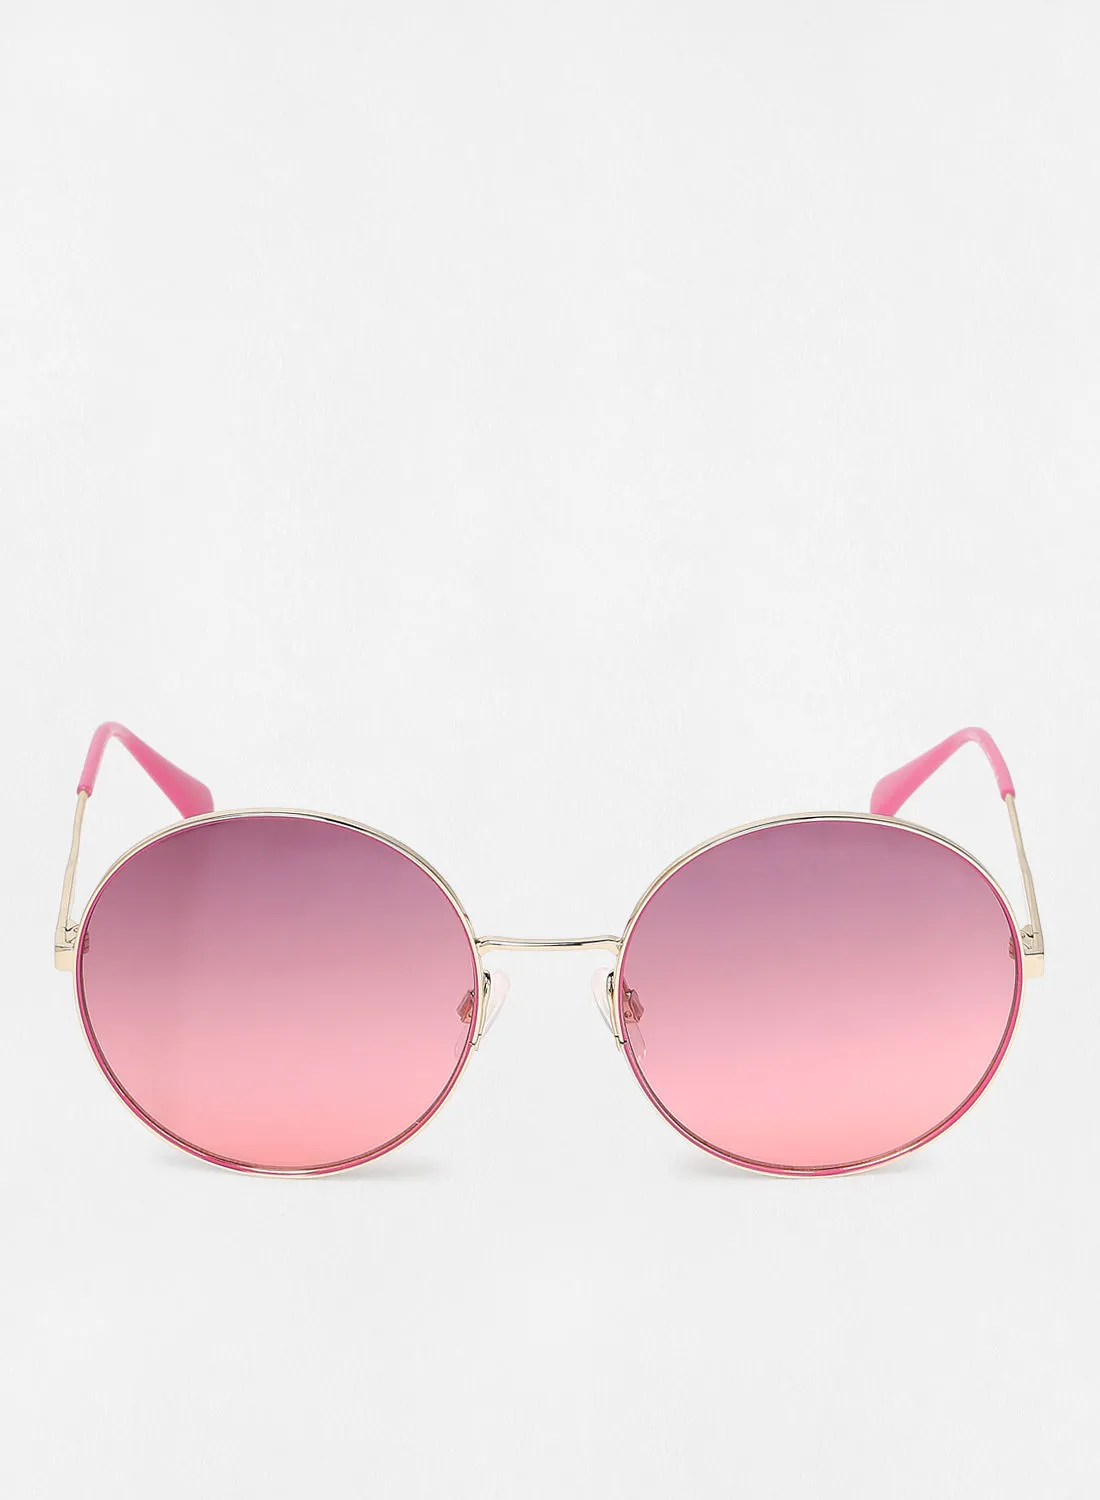 Calvin Klein Jeans Women's Round Sunglasses